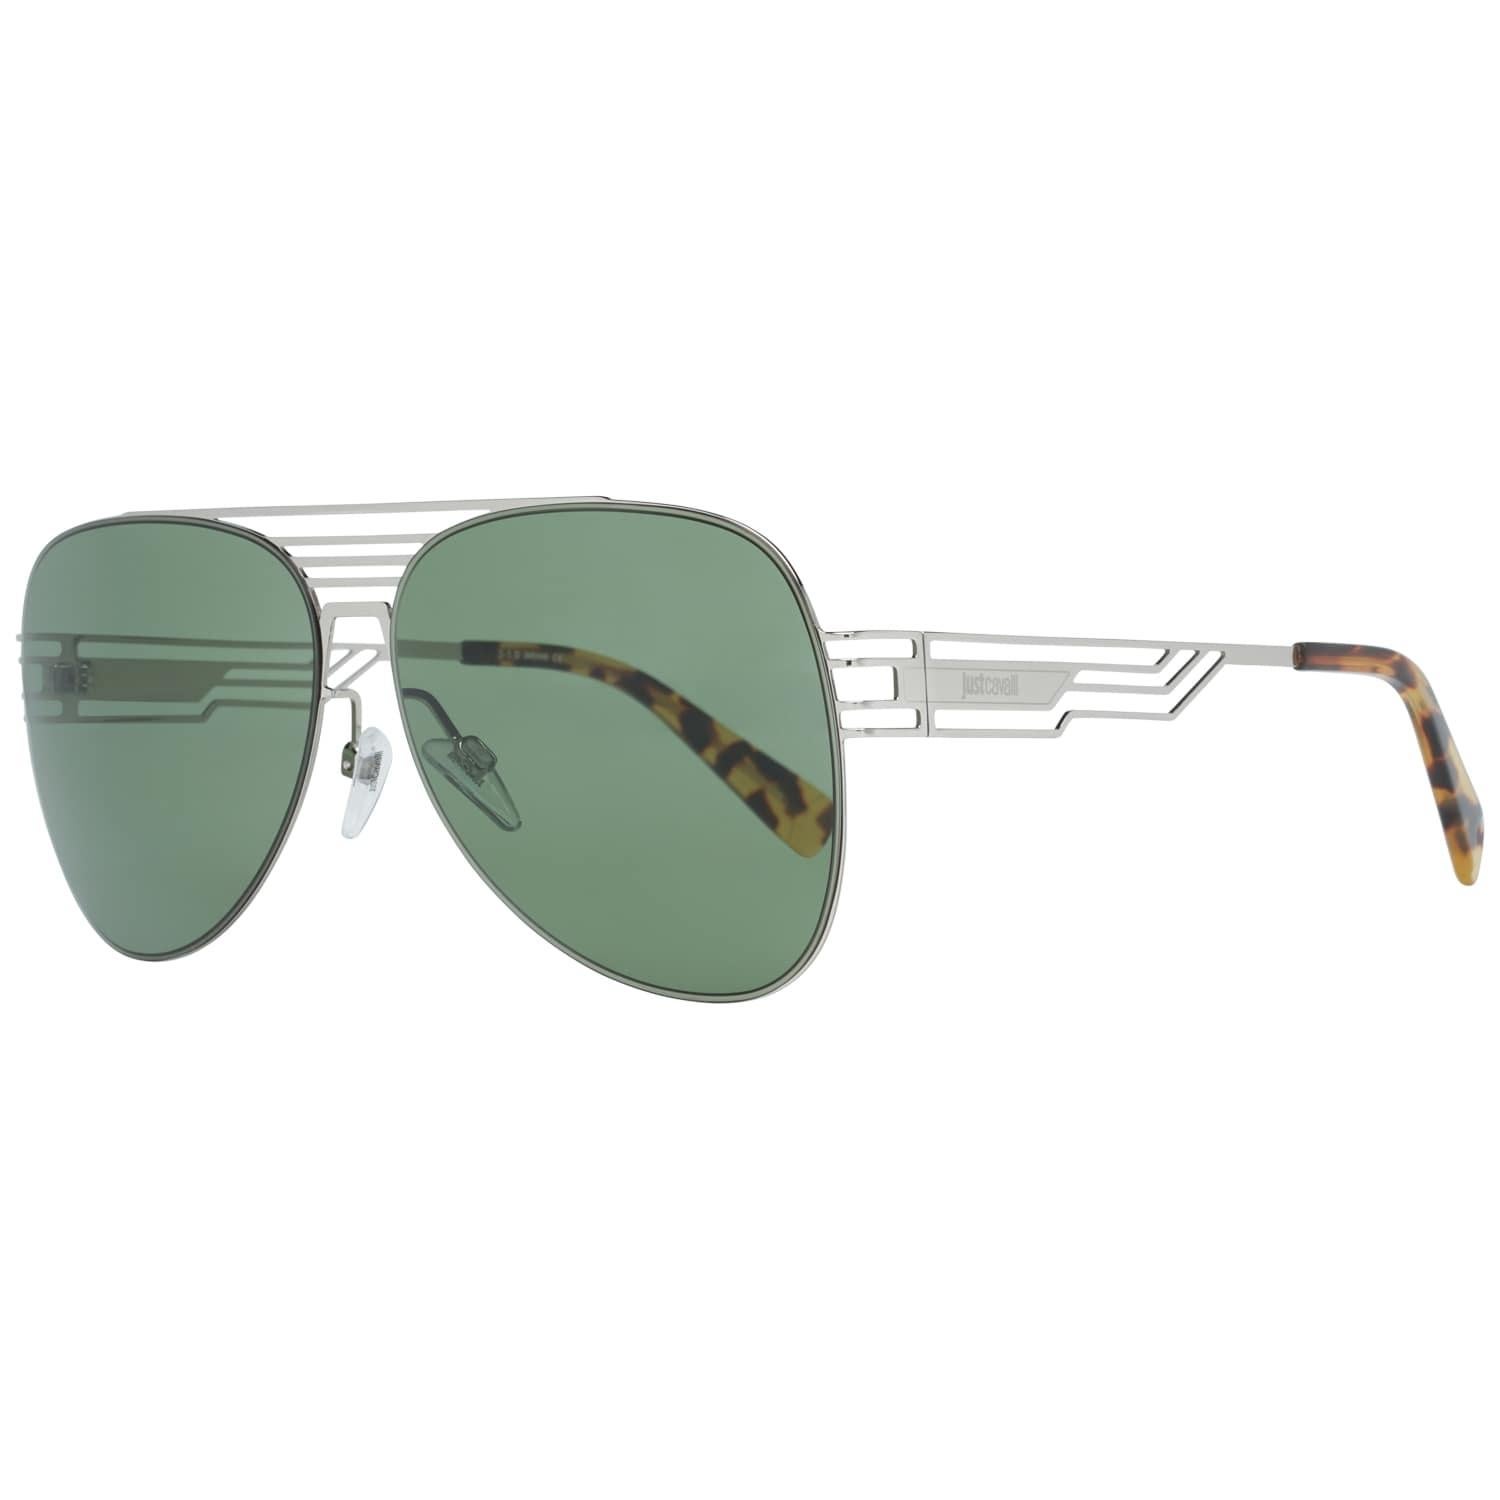 Just Cavalli Mint Unisex Silver Sunglasses JC914S 6116N 61-13-142 mm 3